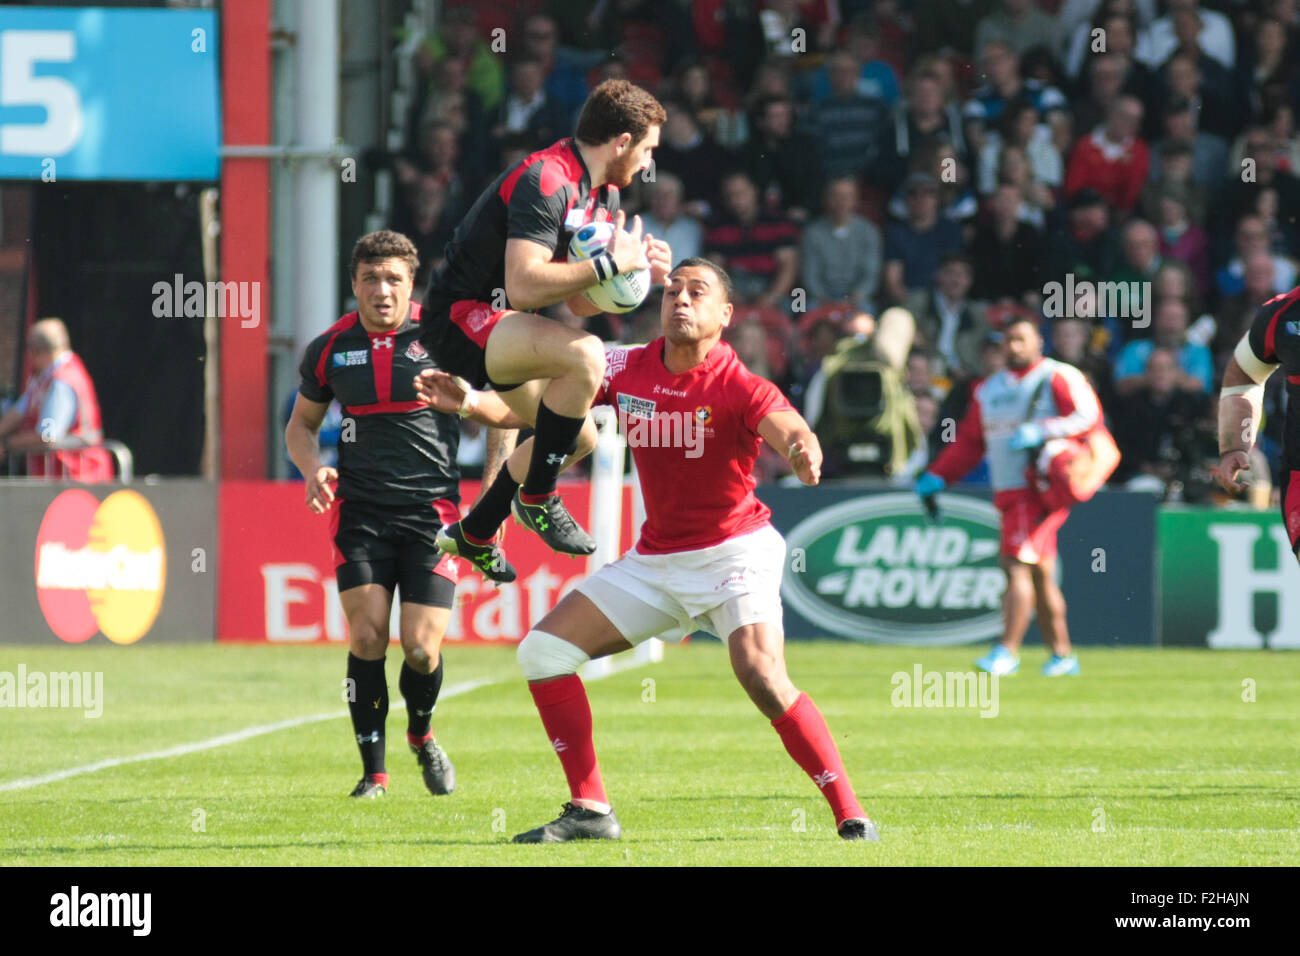 La Rugby World Cup 2015 - Tonga versus Georgia tienen su primer juego en el partido de la Copa del Mundo celebrada en el Kingsholm stadium Gloucester Foto de stock